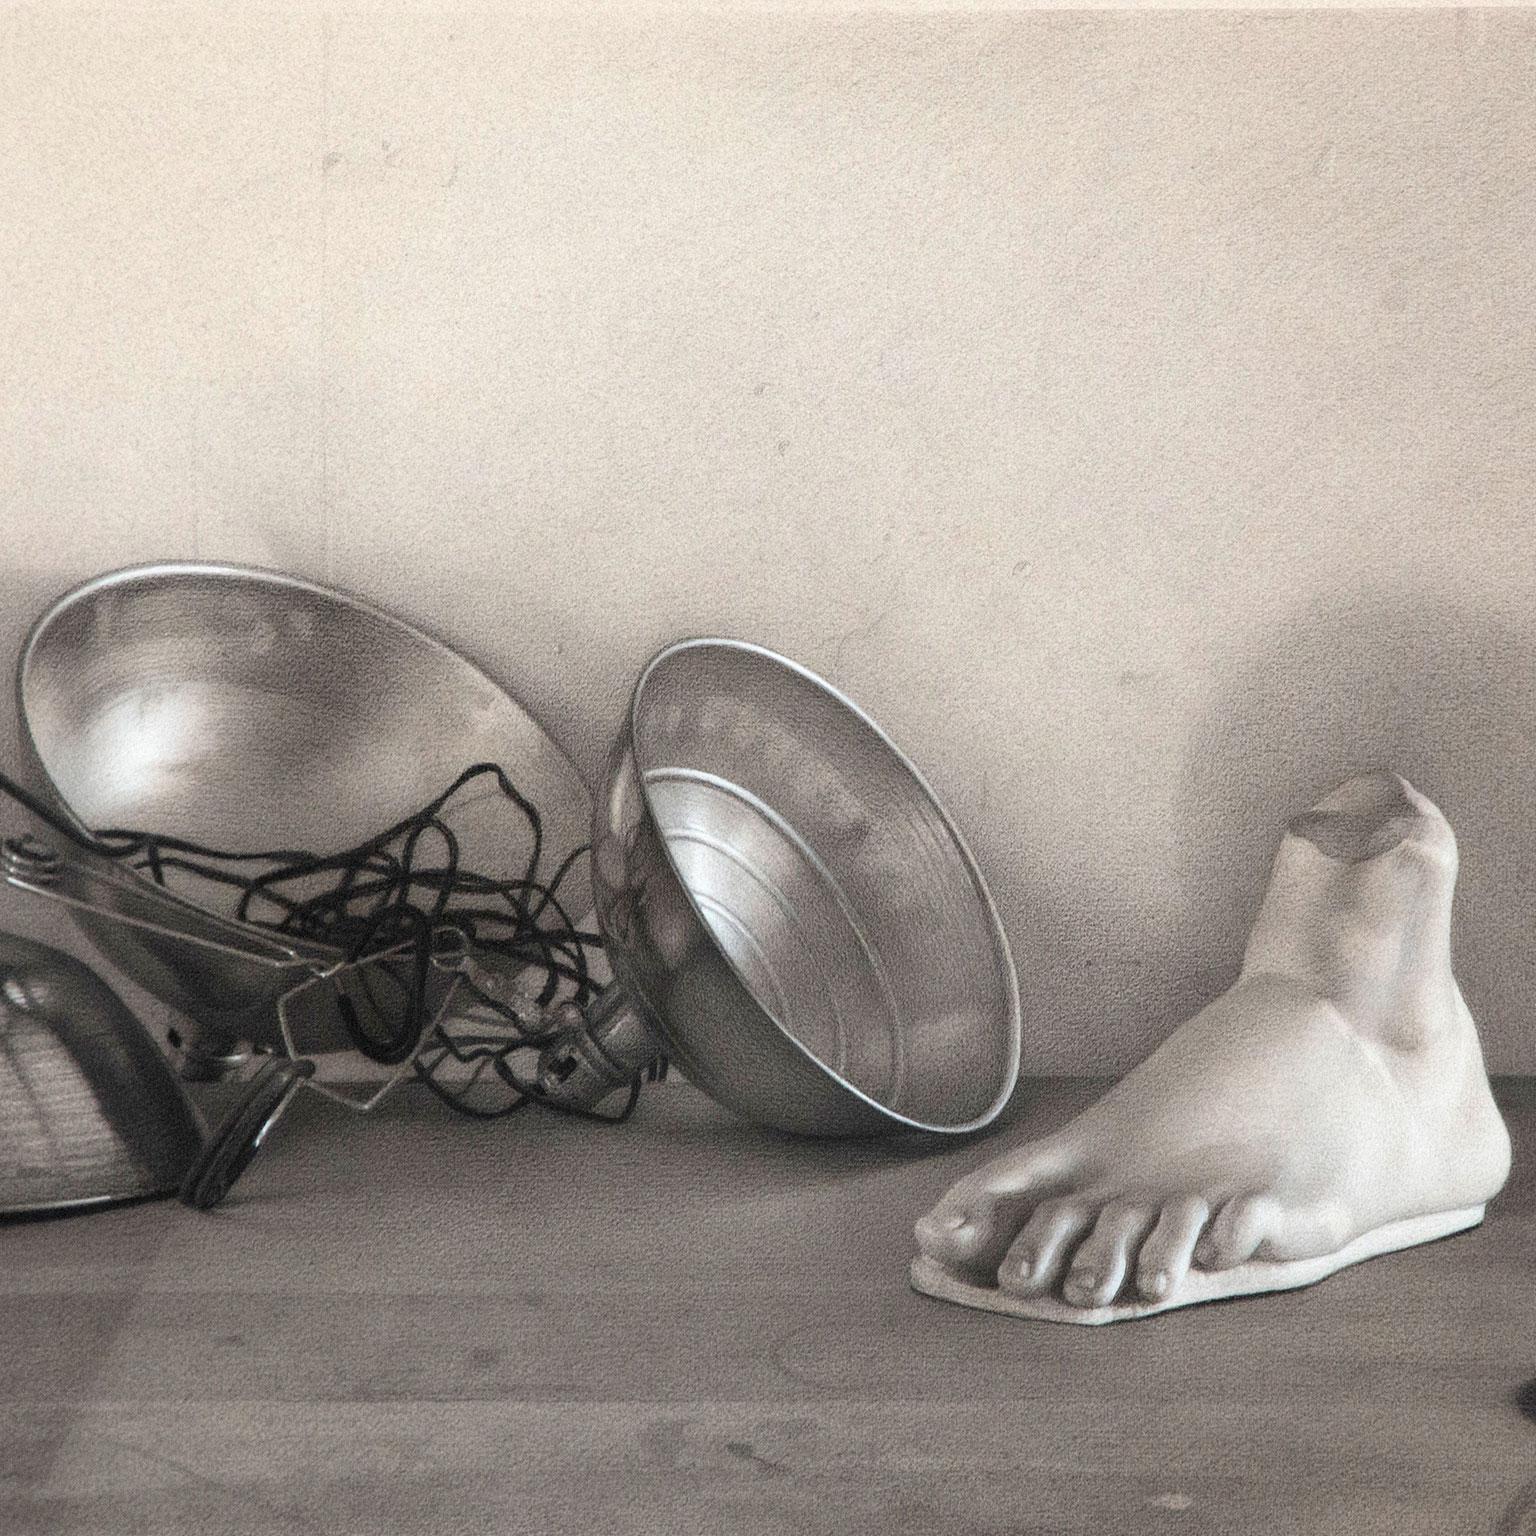 Claudio Bravo (1936-2011) ist ein bekannter chilenischer Künstler, der vor allem für seine akribischen hyperrealistischen Werke bekannt ist. Bravo wird für seine filigrane Präzision gefeiert, mit der er seine ausgesprochen surrealen und traumhaften